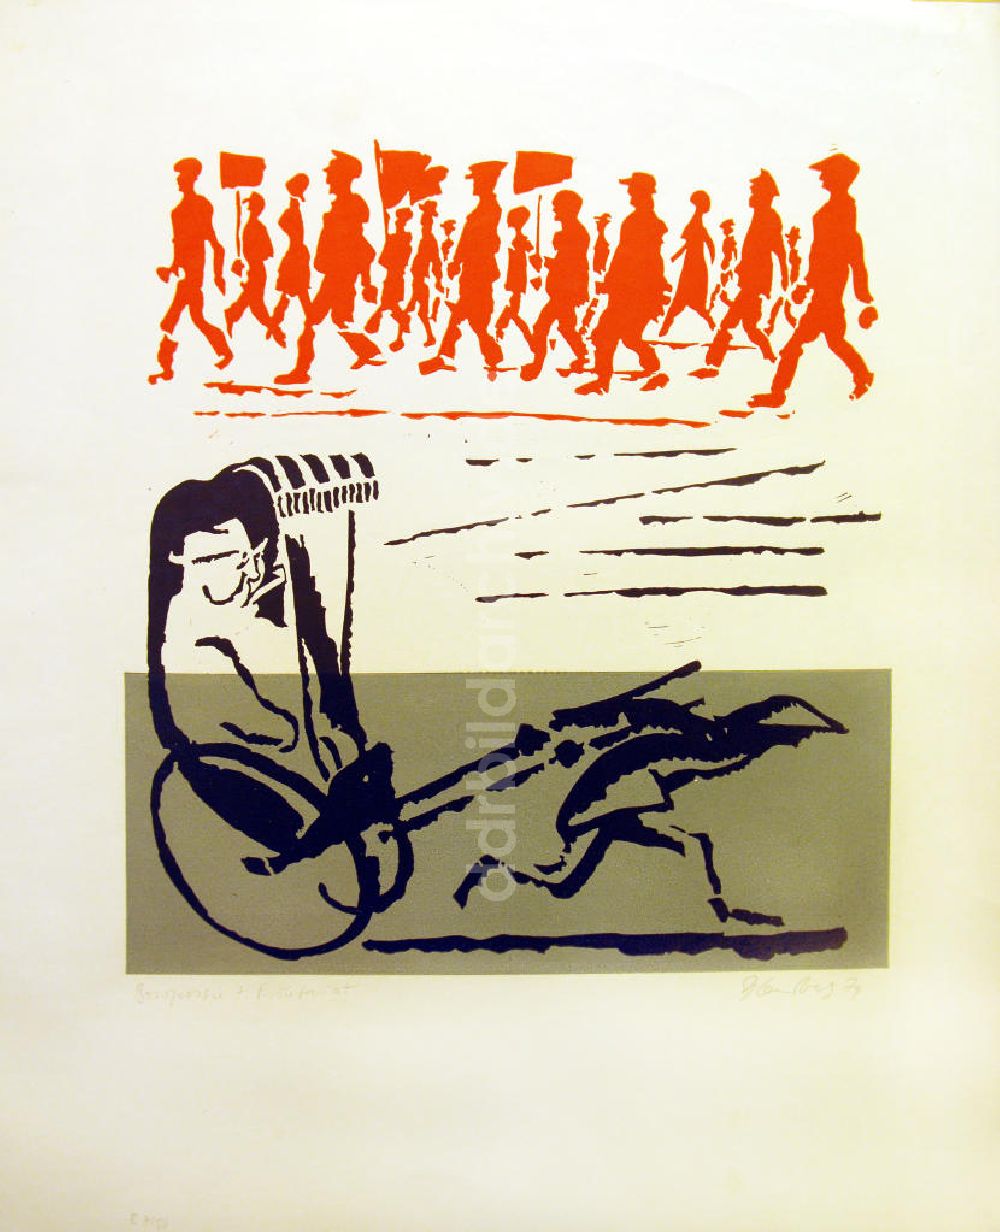 DDR-Bildarchiv: Berlin - Grafik von Herbert Sandberg Bourgeoisie und Proletariat aus dem Jahr 1974